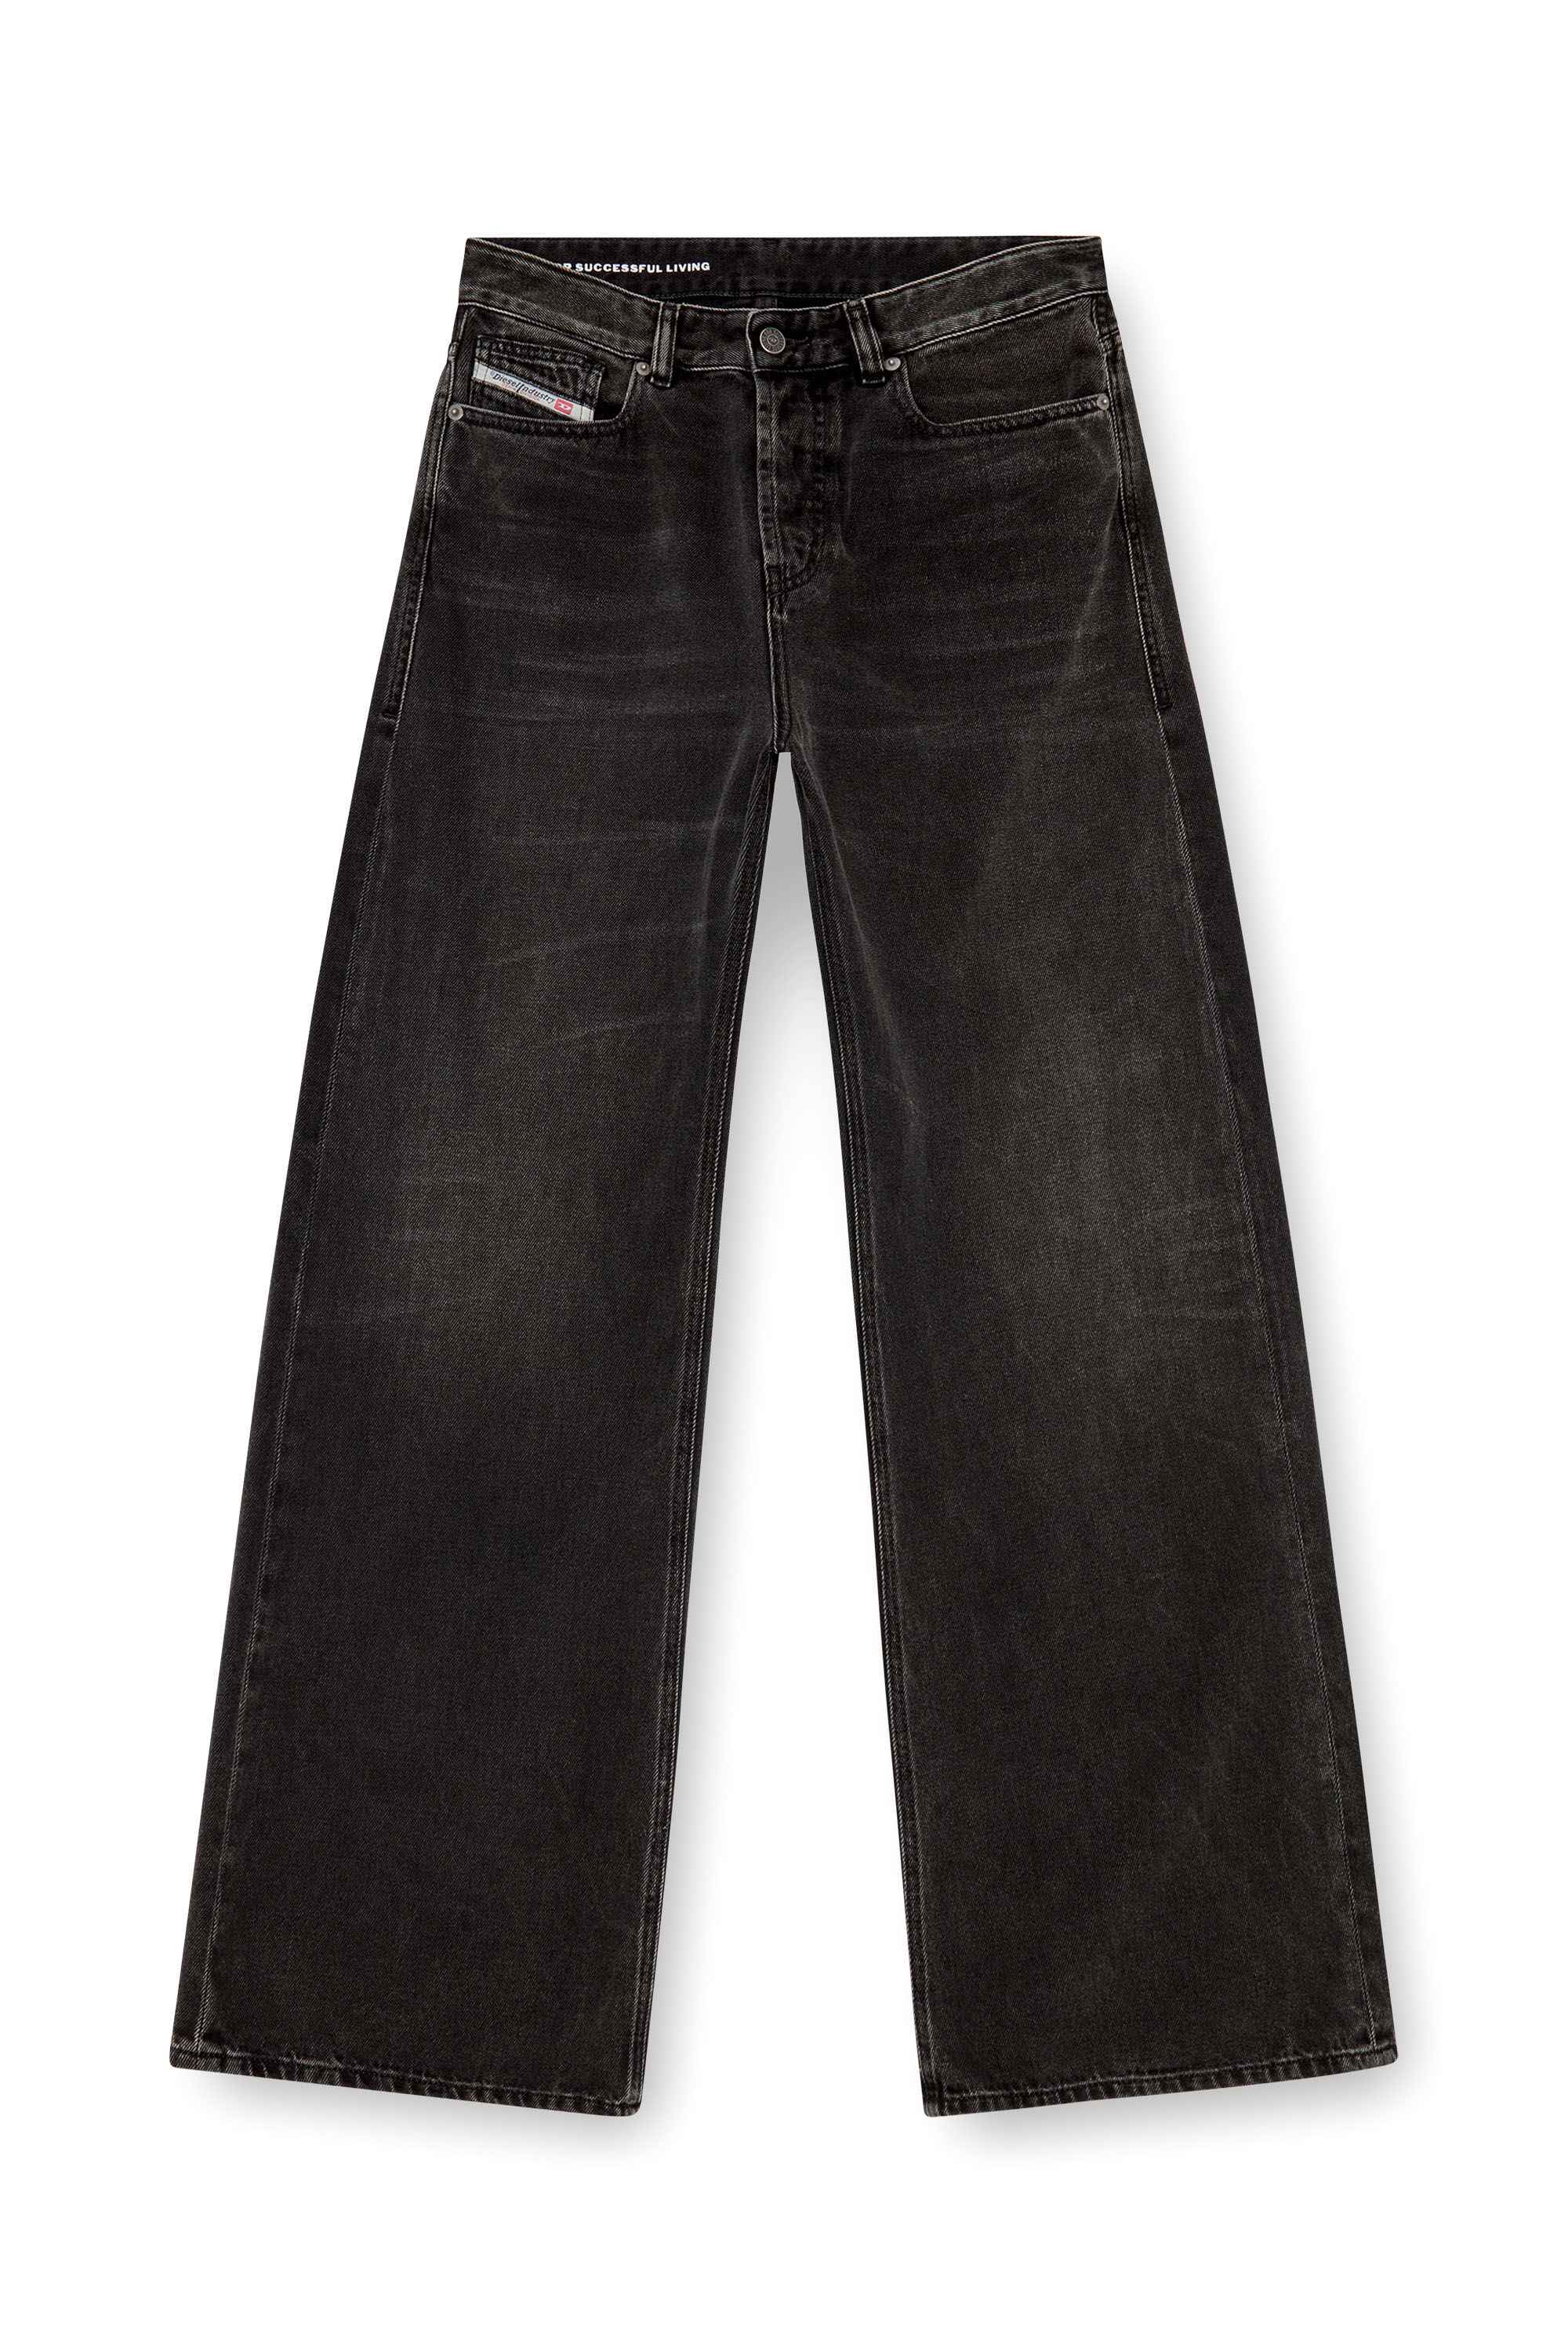 Diesel - Femme Straight Jeans 1996 D-Sire 09J96, Noir/Gris foncé - Image 2